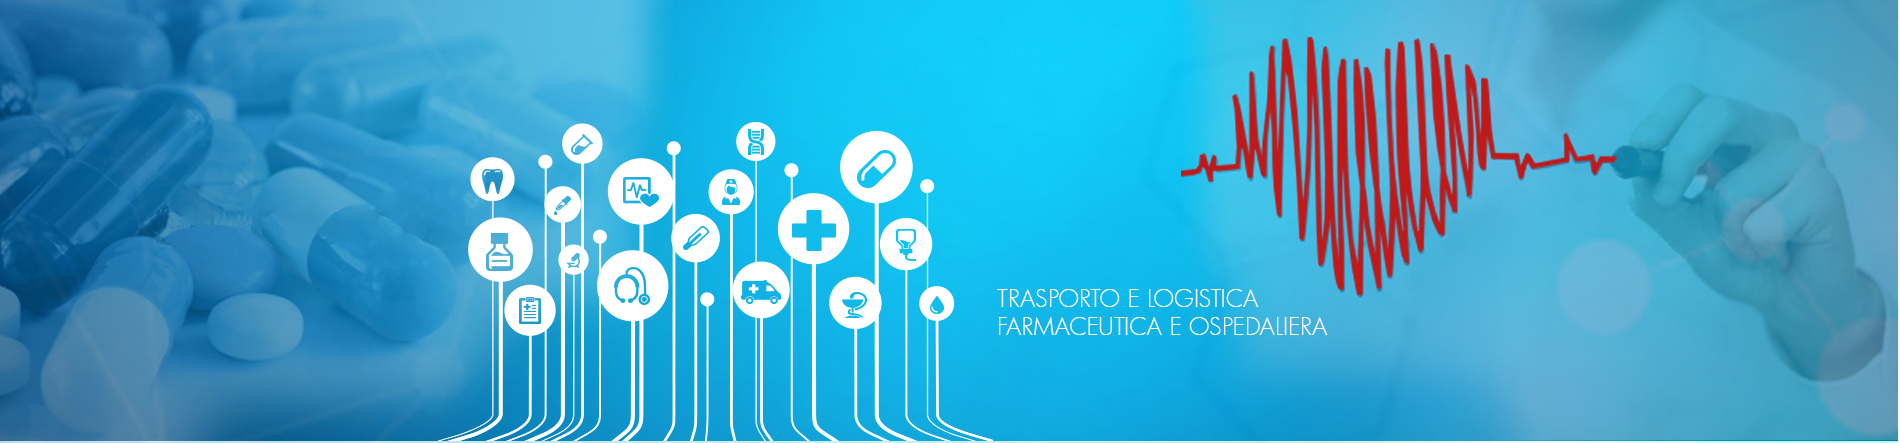 Trasporto di dispositivi medici - Trasporto di reagenti chimici - Logistica farmaceutica - Logistica Ospedaliera - Logistica Farmaceutica - Trasporto cosmetici - Trasporto farmaci e medicinali